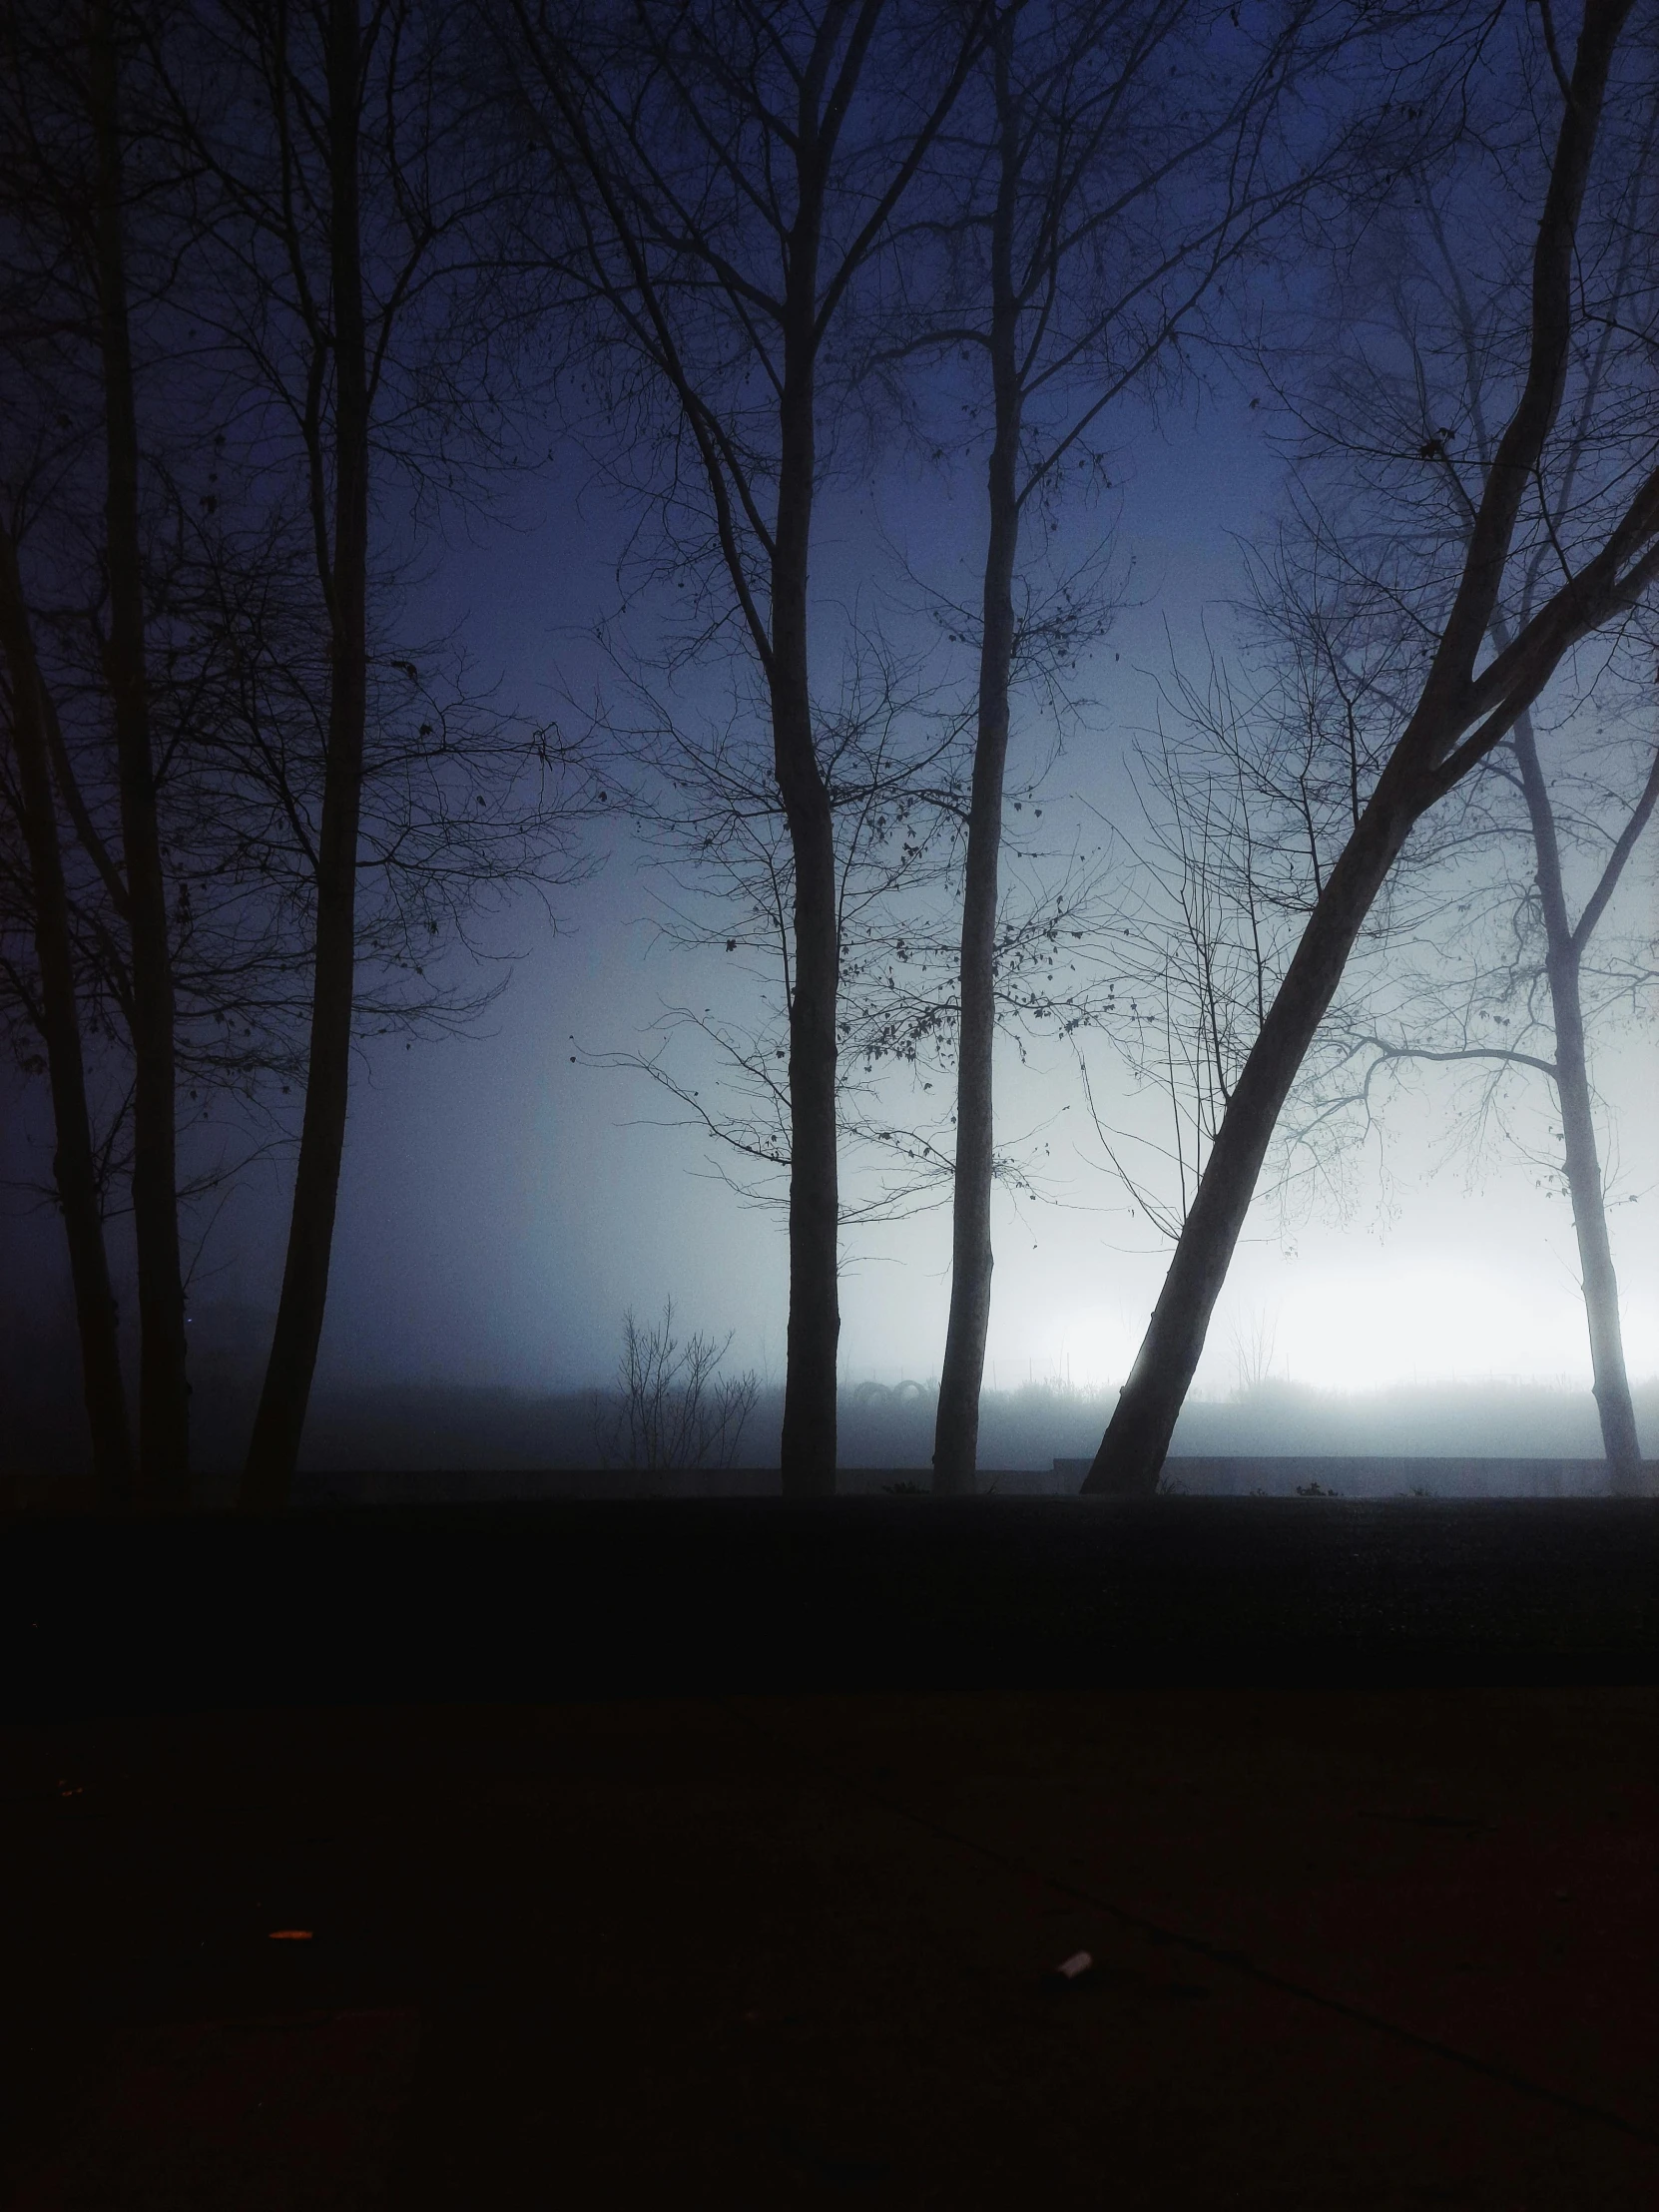 a dark, foggy, field with many trees